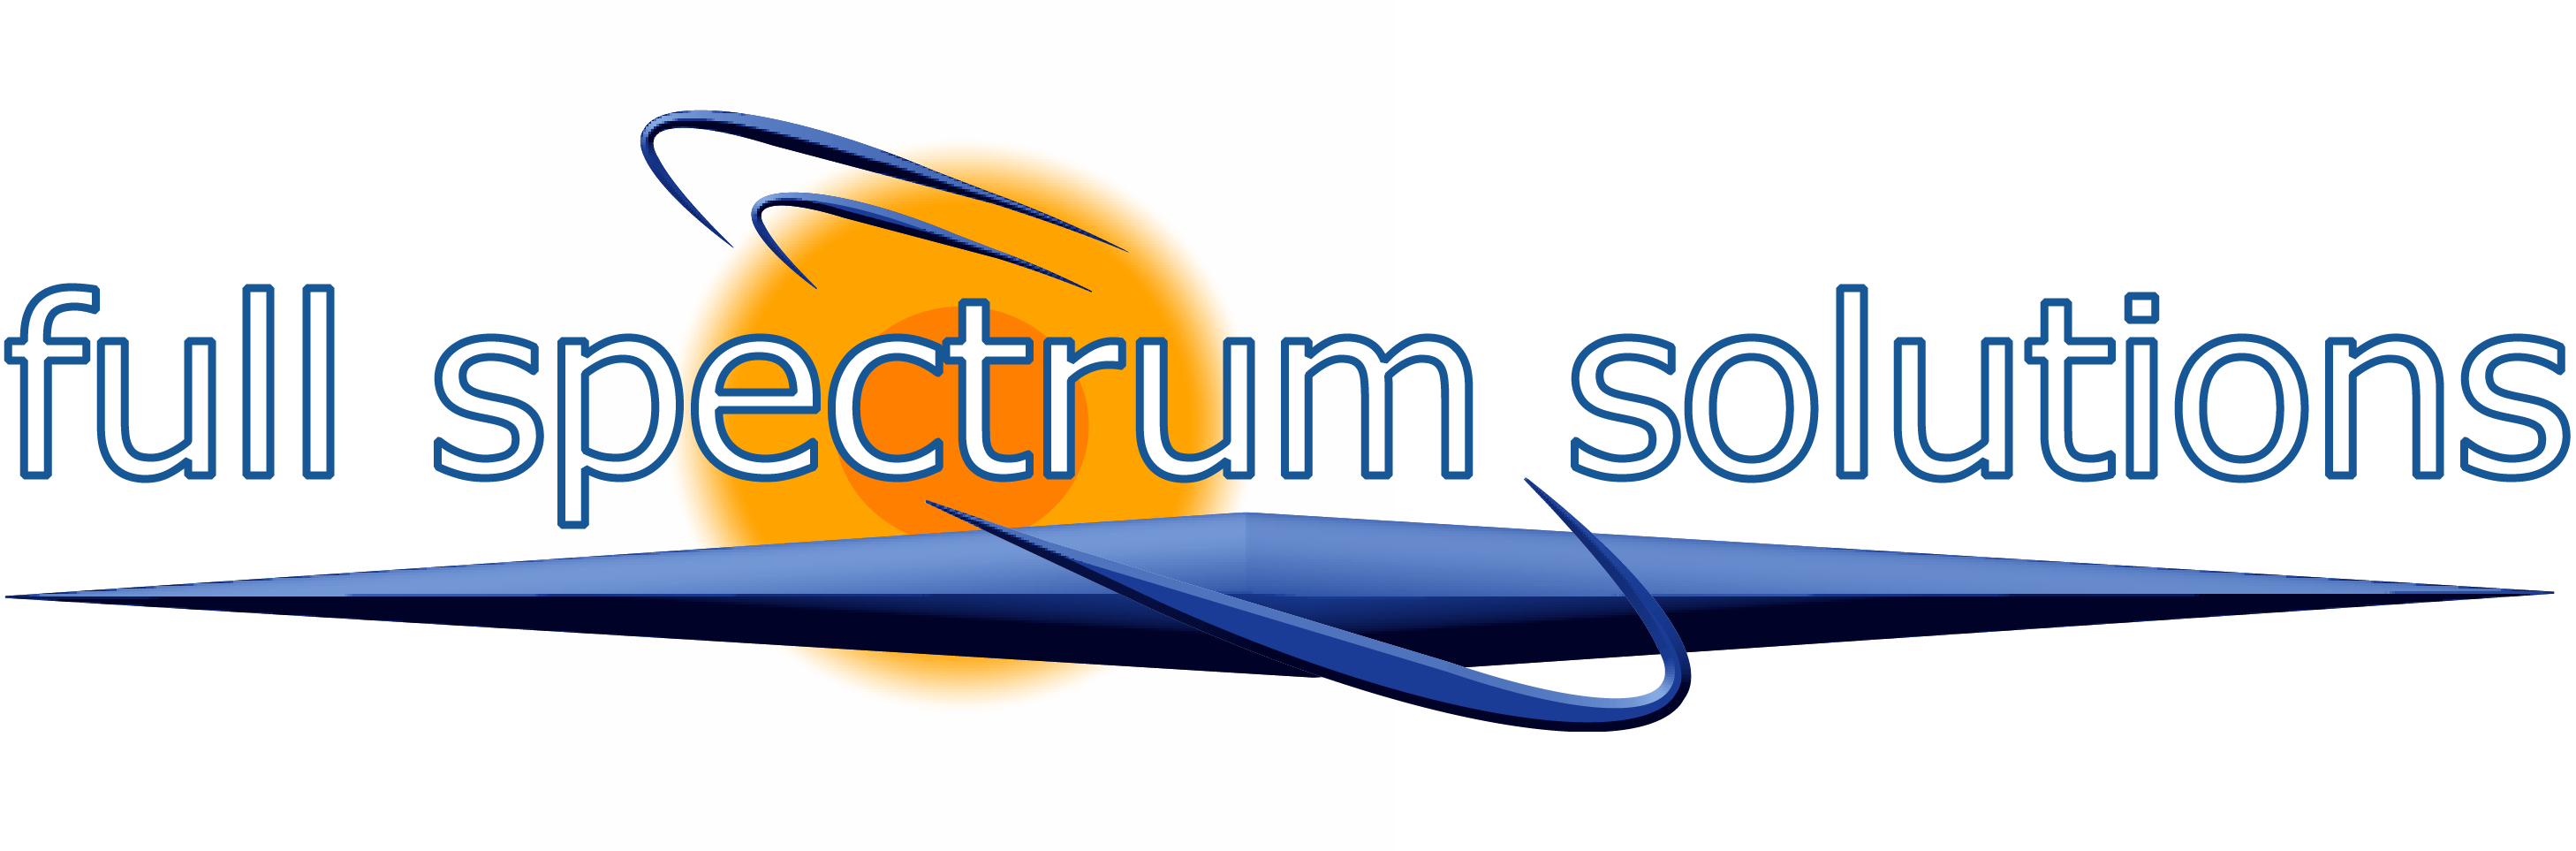 Full Spectrum Solutions, Inc.  California Lighting Technology Center